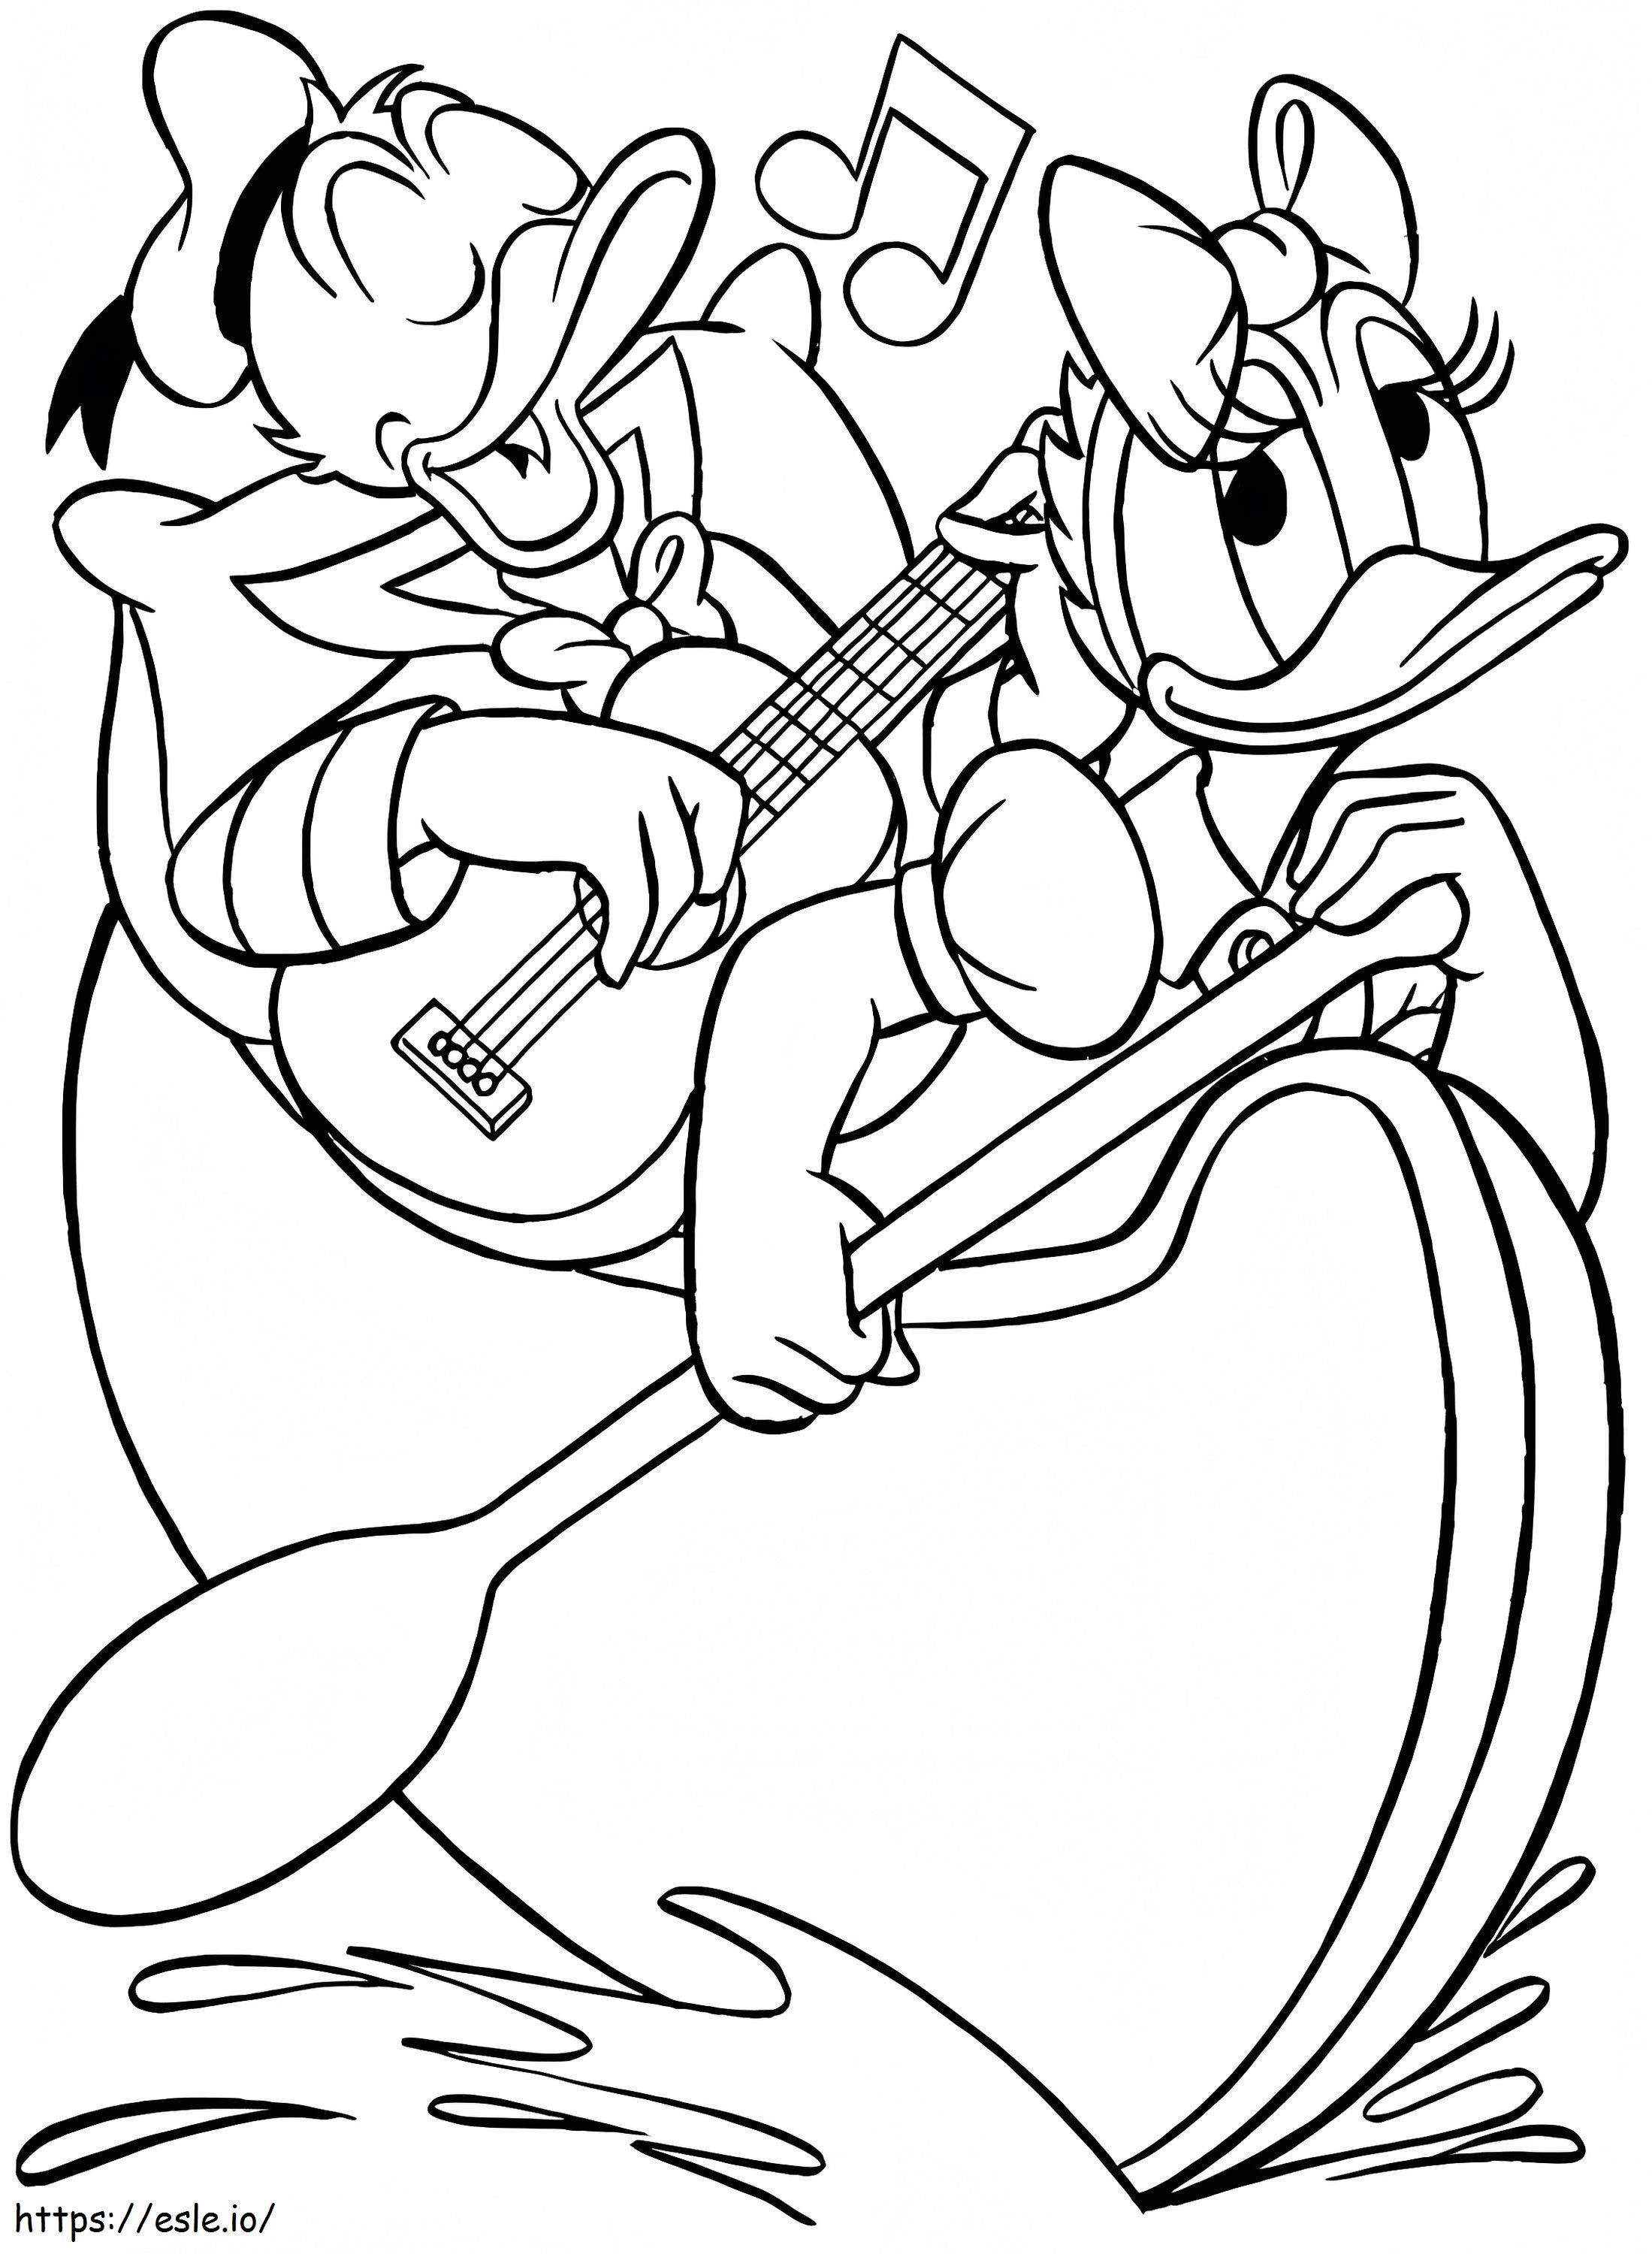 Pato Donald e Margarida Remando para colorir